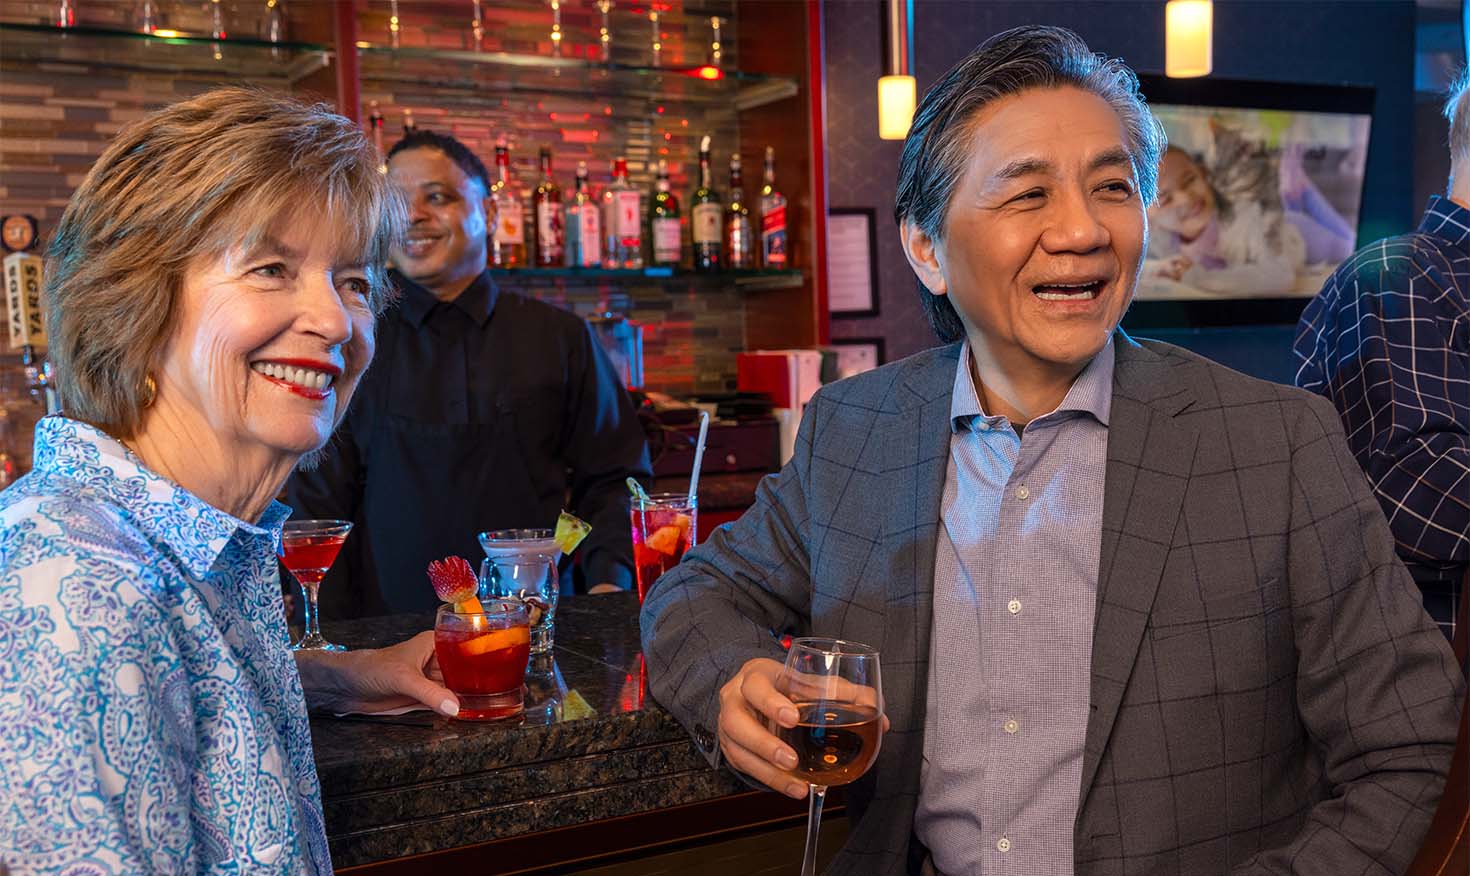 A senior man and woman enjoying drinks at a bar